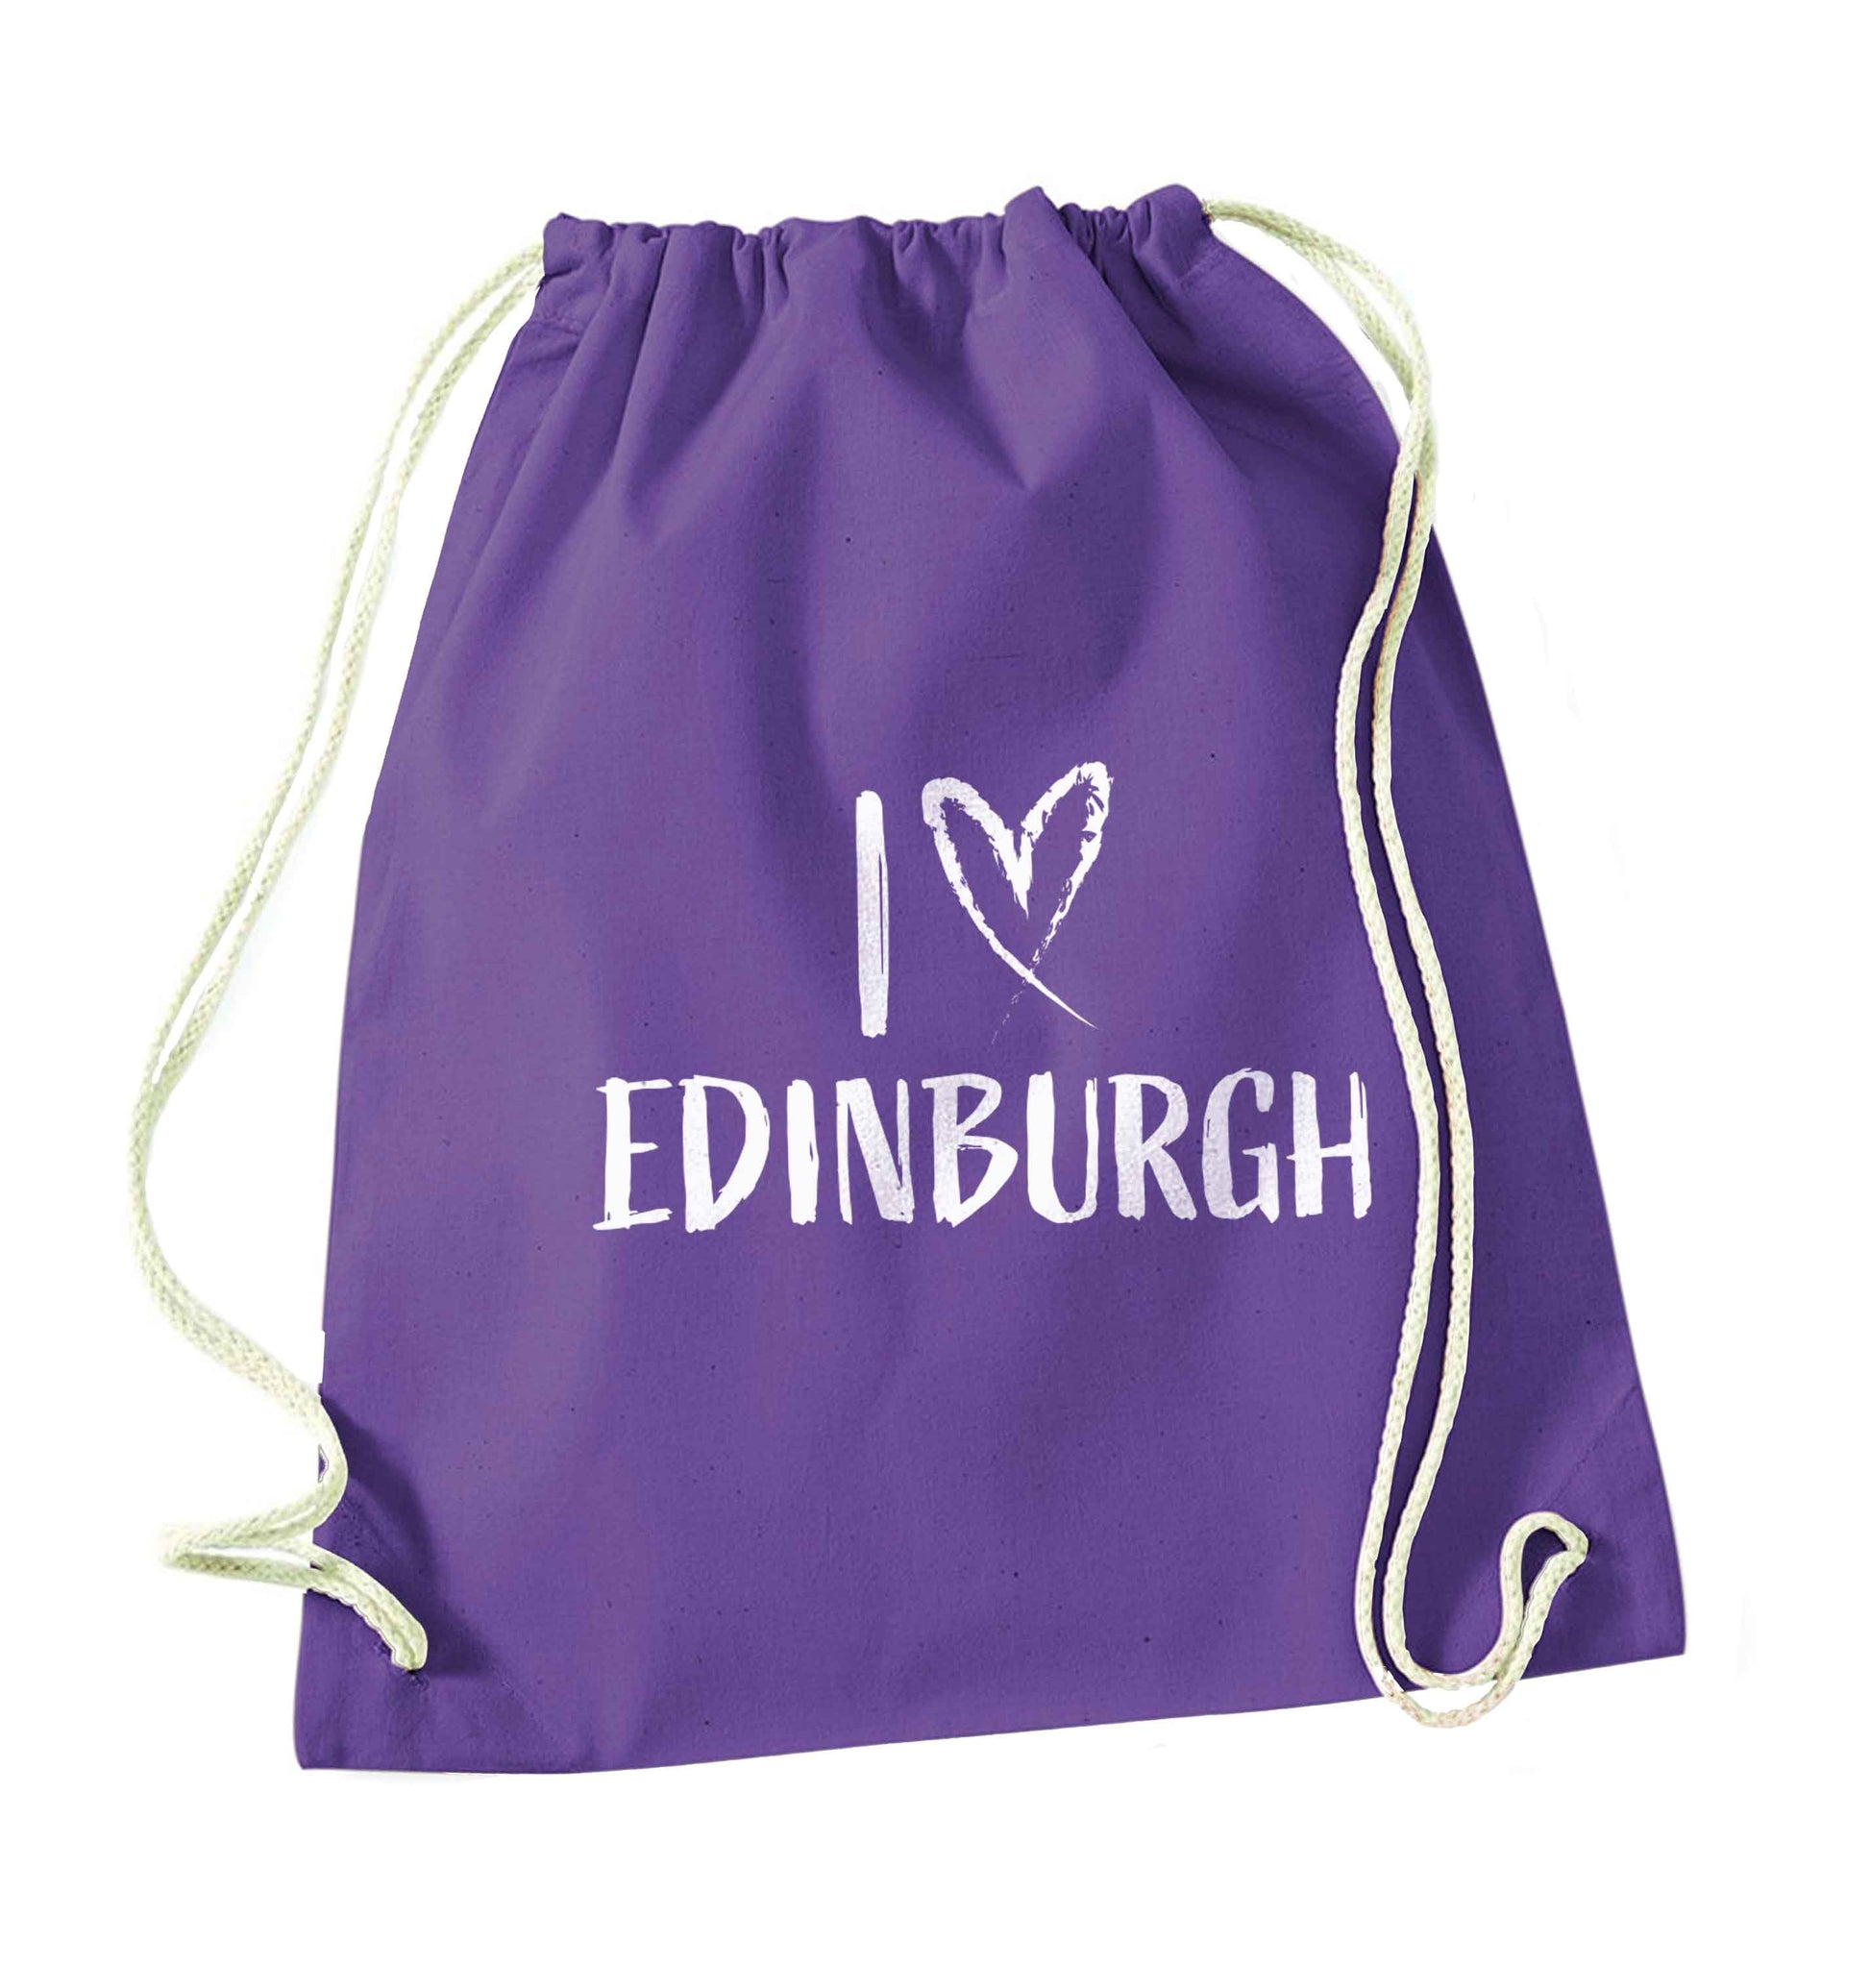 I love Edinburgh purple drawstring bag